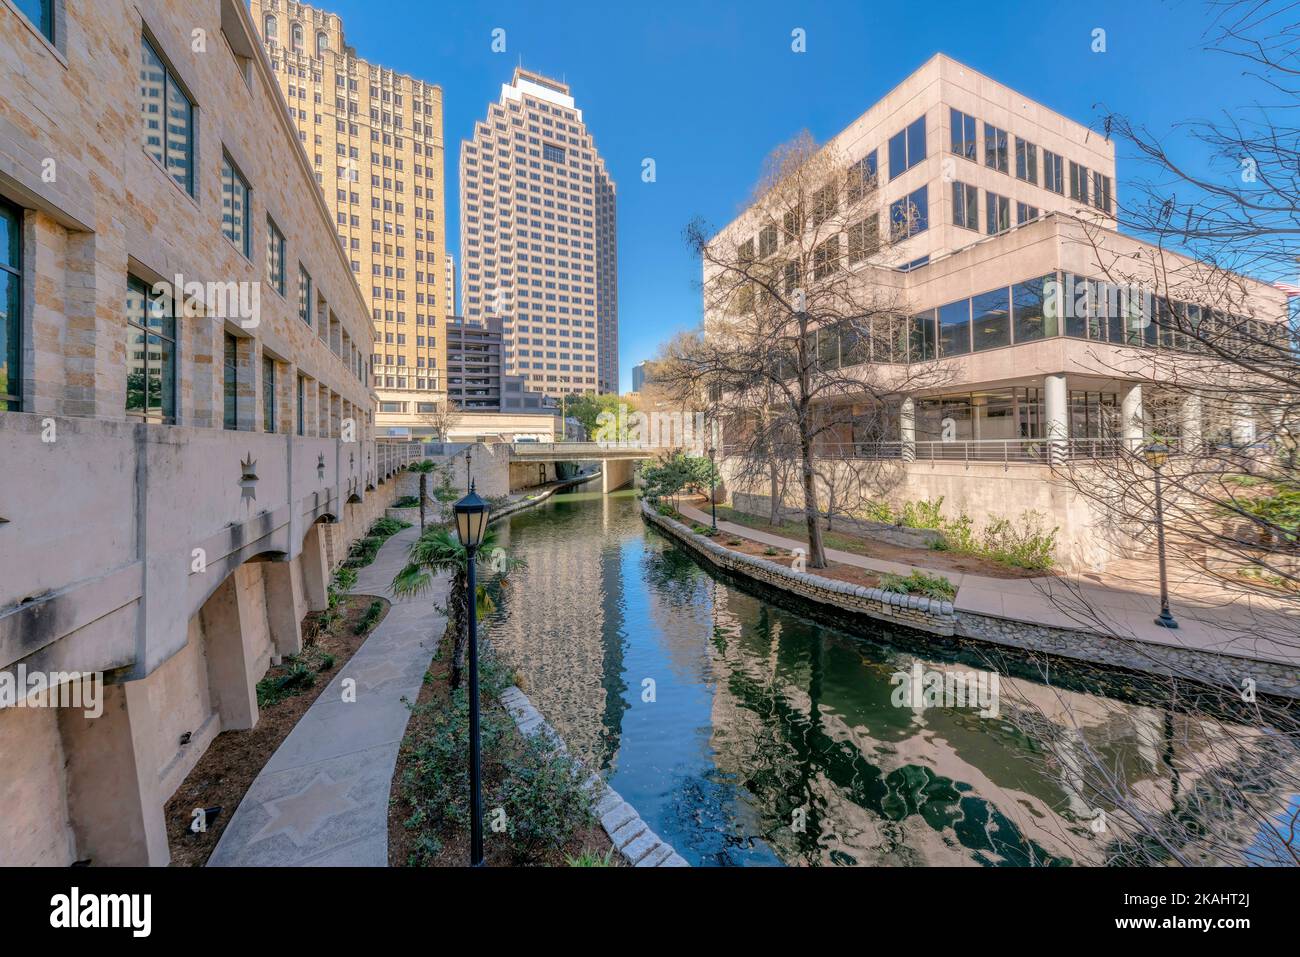 Flusswanderung in San Antonio Texas entlang hoher Gebäude mit blauem Himmel Hintergrund. Gepflasterte Pfade für Touristen, die auf dem ruhigen Wasser des laufen können Stockfoto